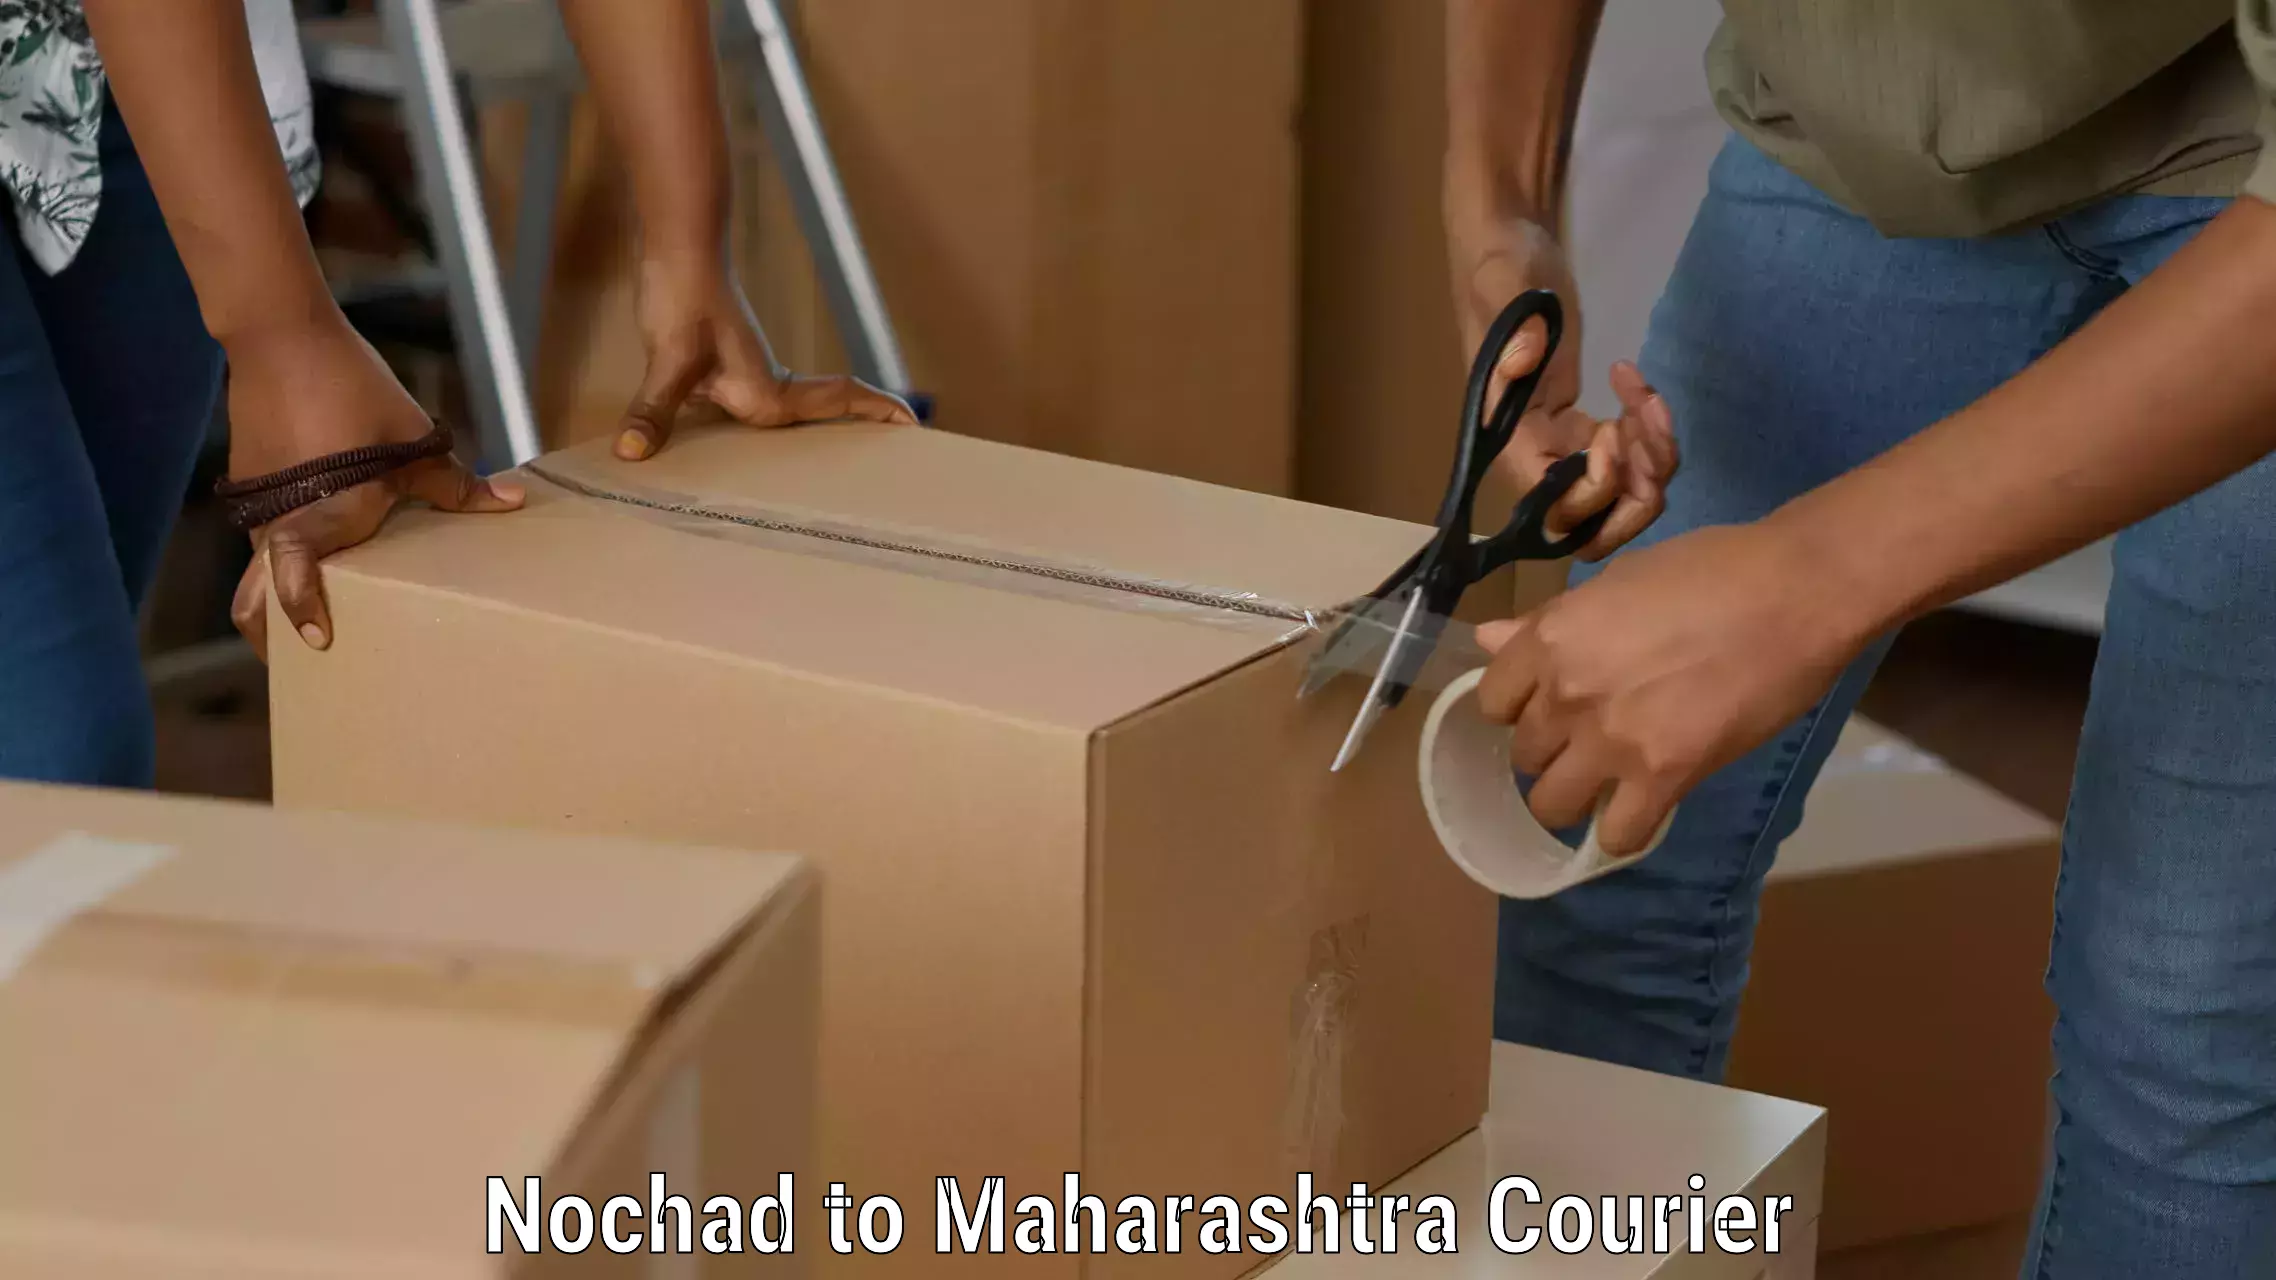 Reliable parcel services Nochad to Borivali